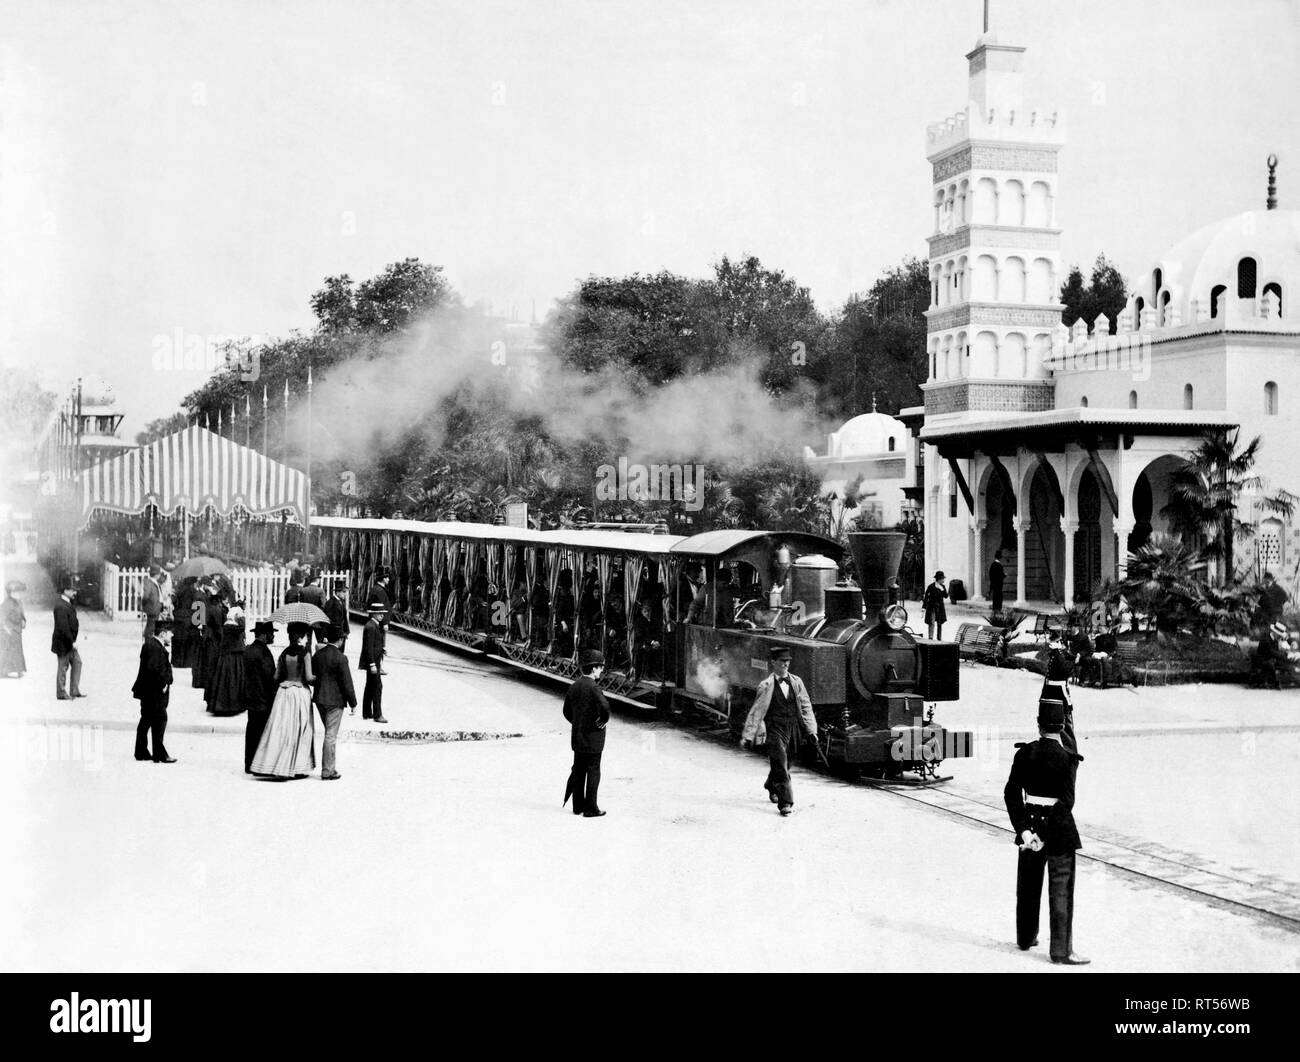 Un train de chemin de fer à l'avant du pavillon de l'Algérie au cours de l'Exposition de Paris 1889. Banque D'Images